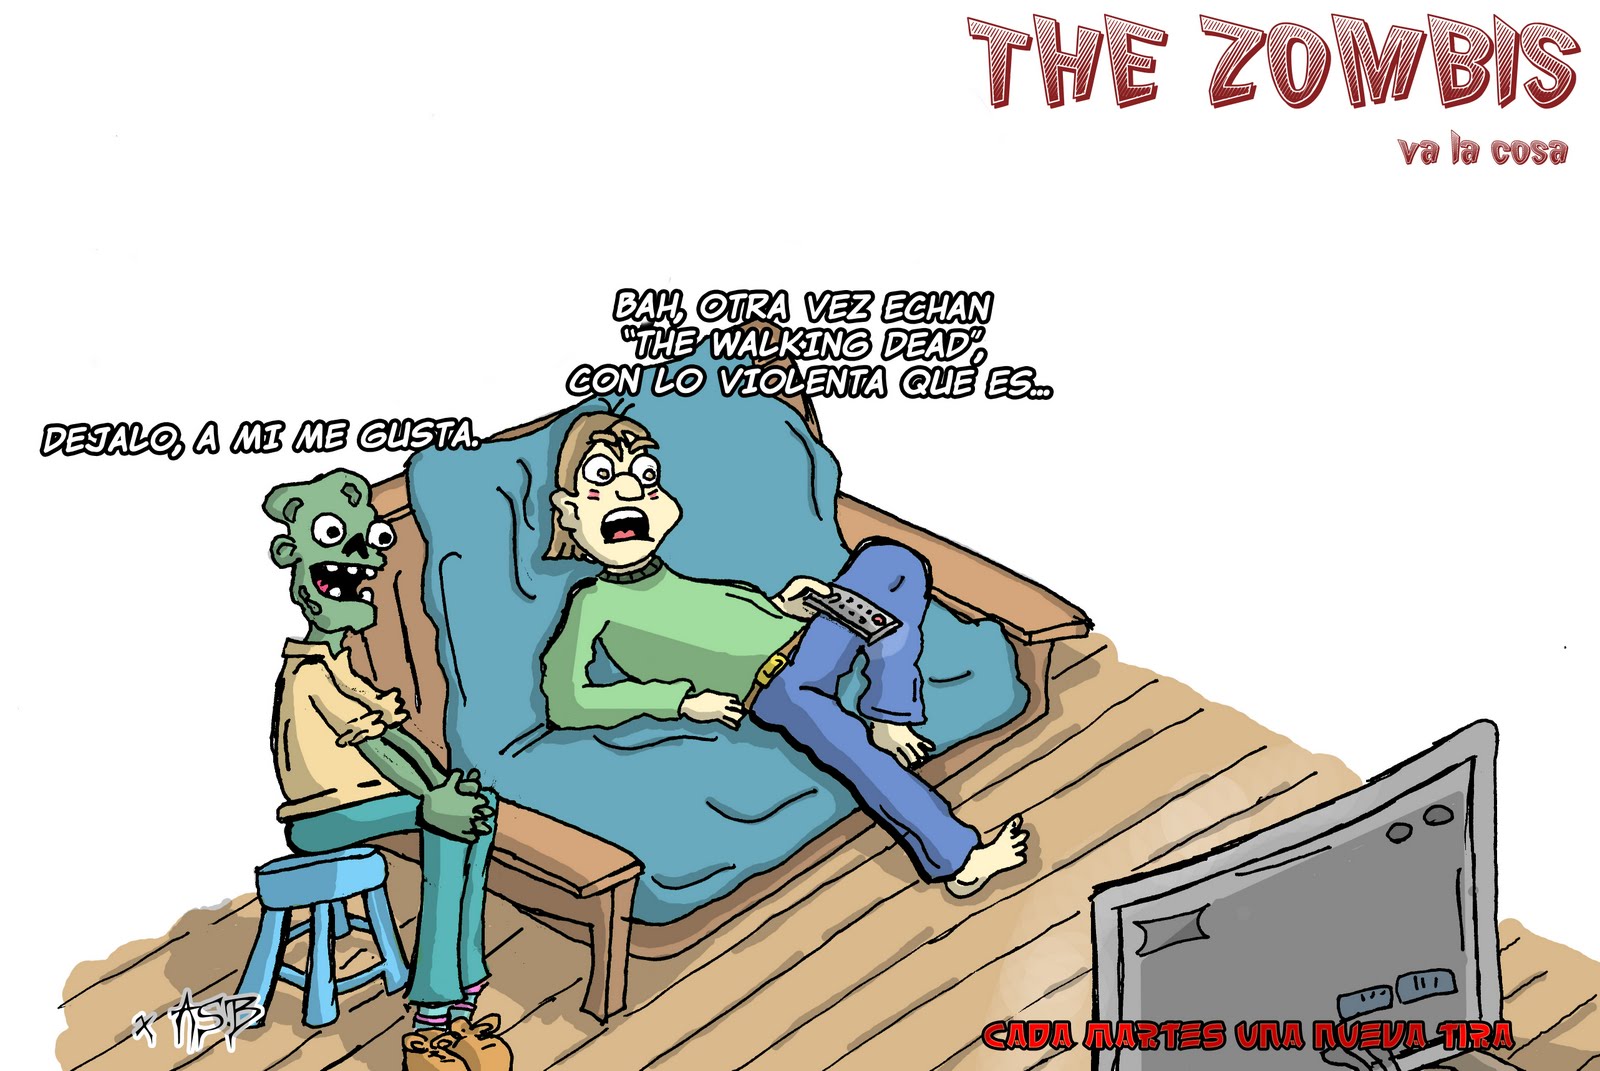 The zombis autor